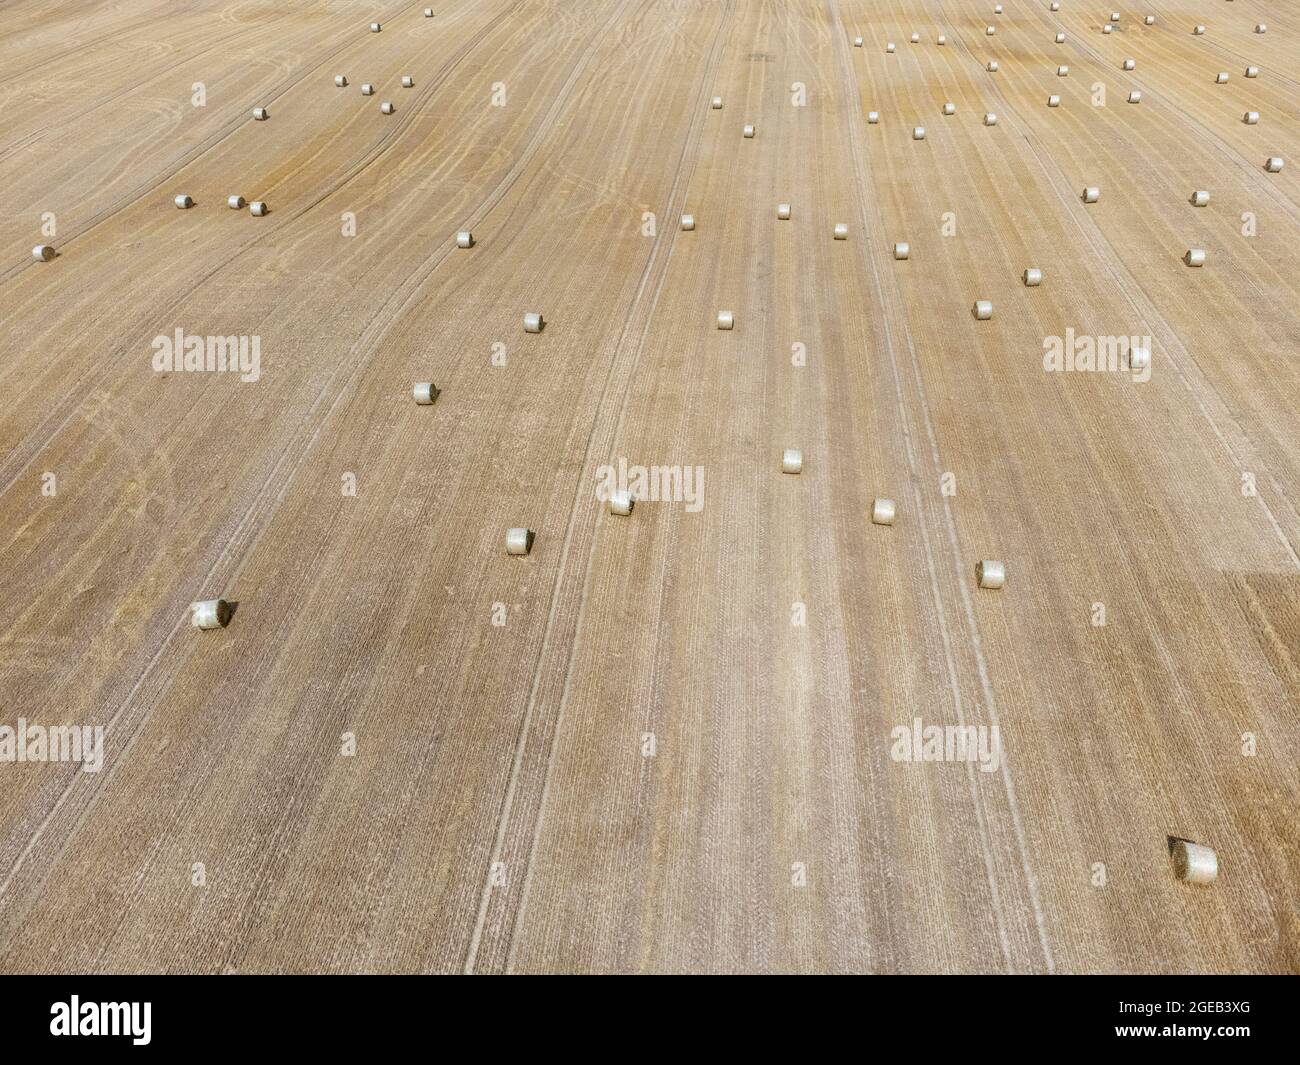 Strahballen auf einem abgeernteten Getreidefeld Stock Photo